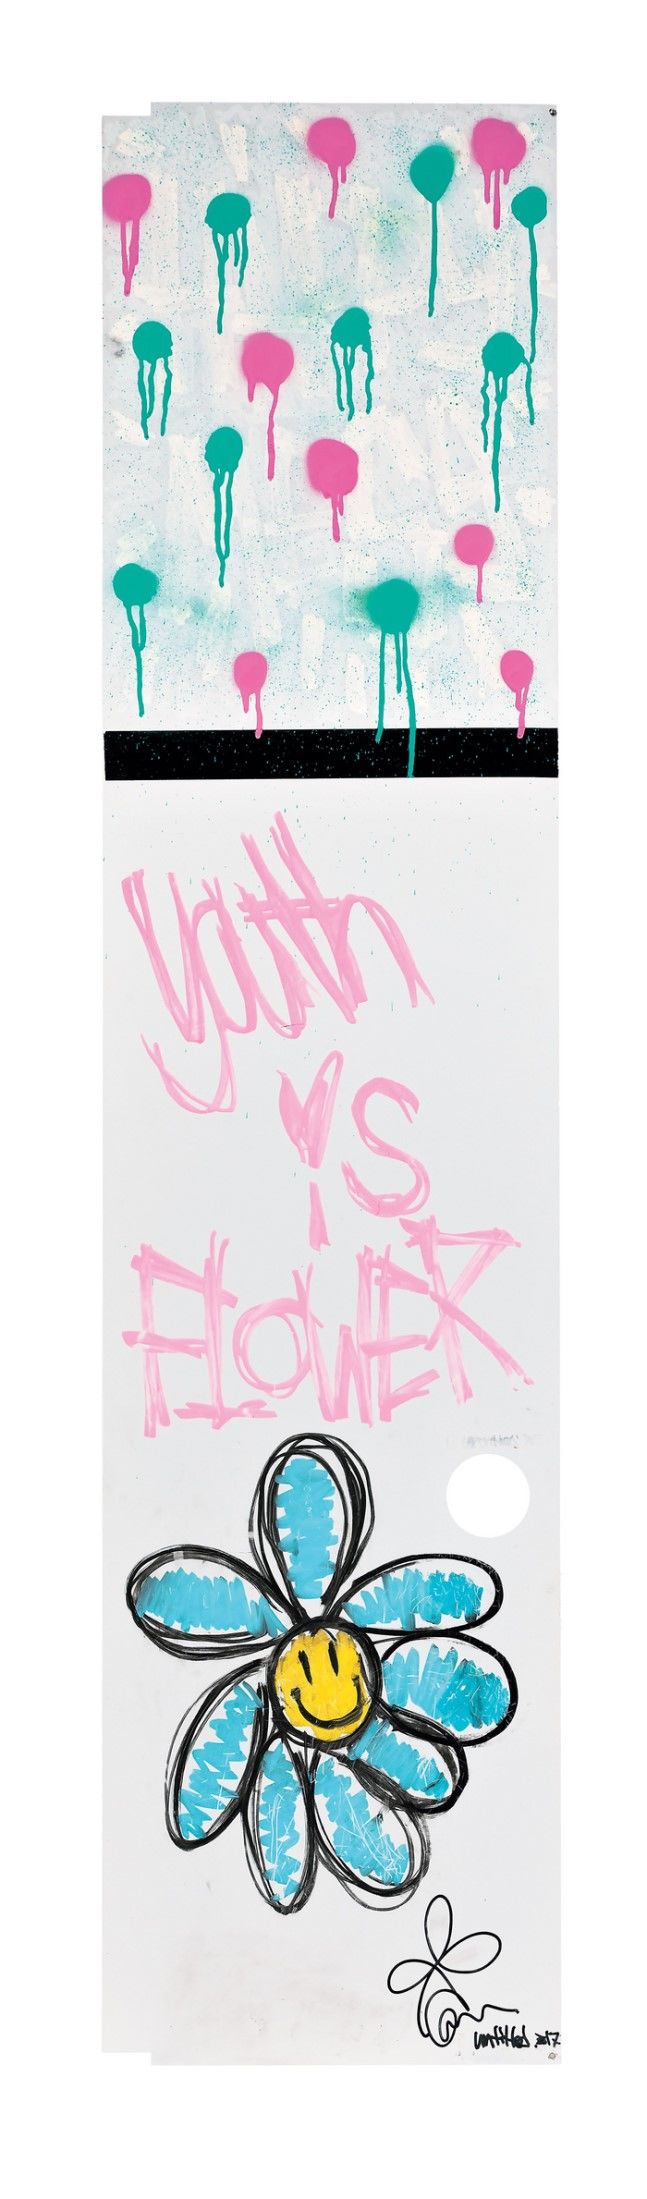 권지용(G-DRAGON)의 ‘Youth is Flower’ *재판매 및 DB 금지